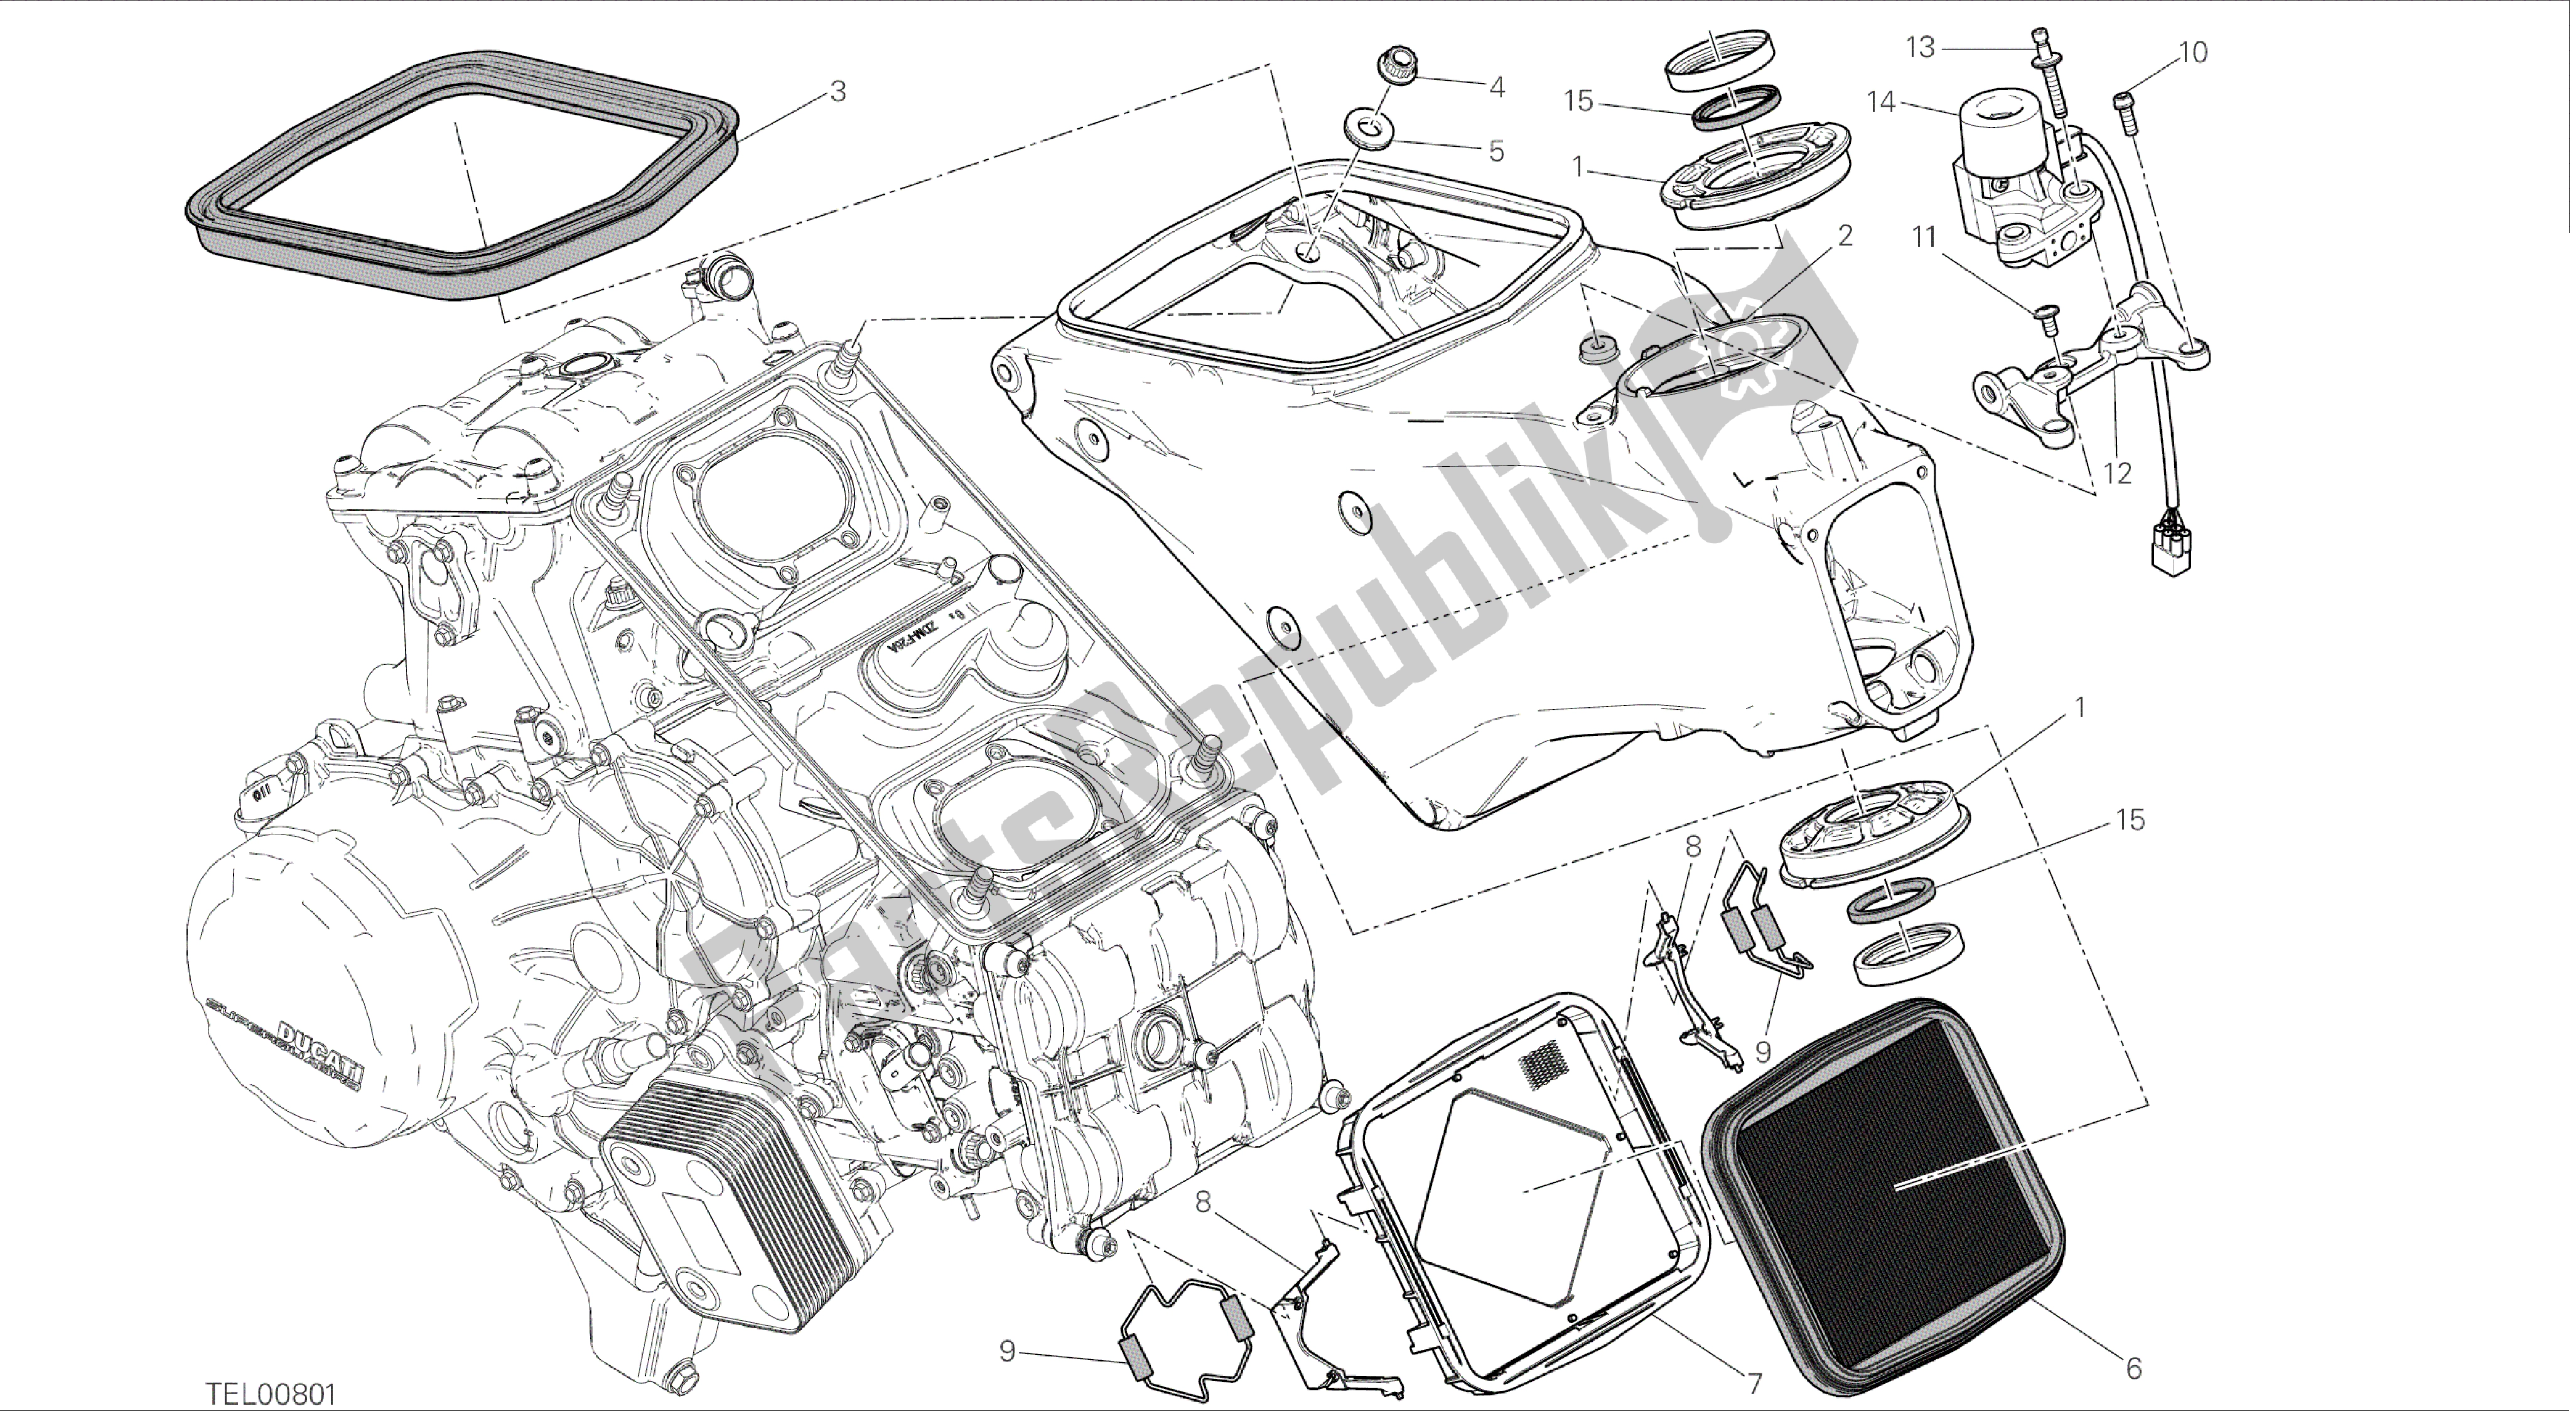 Todas las partes para Dibujo 022 - Fotograma De Grupo [mod: 899 Abs; Xst: Aus, Eur, Fra, Jap, Twn] de Ducati Panigale 899 2014